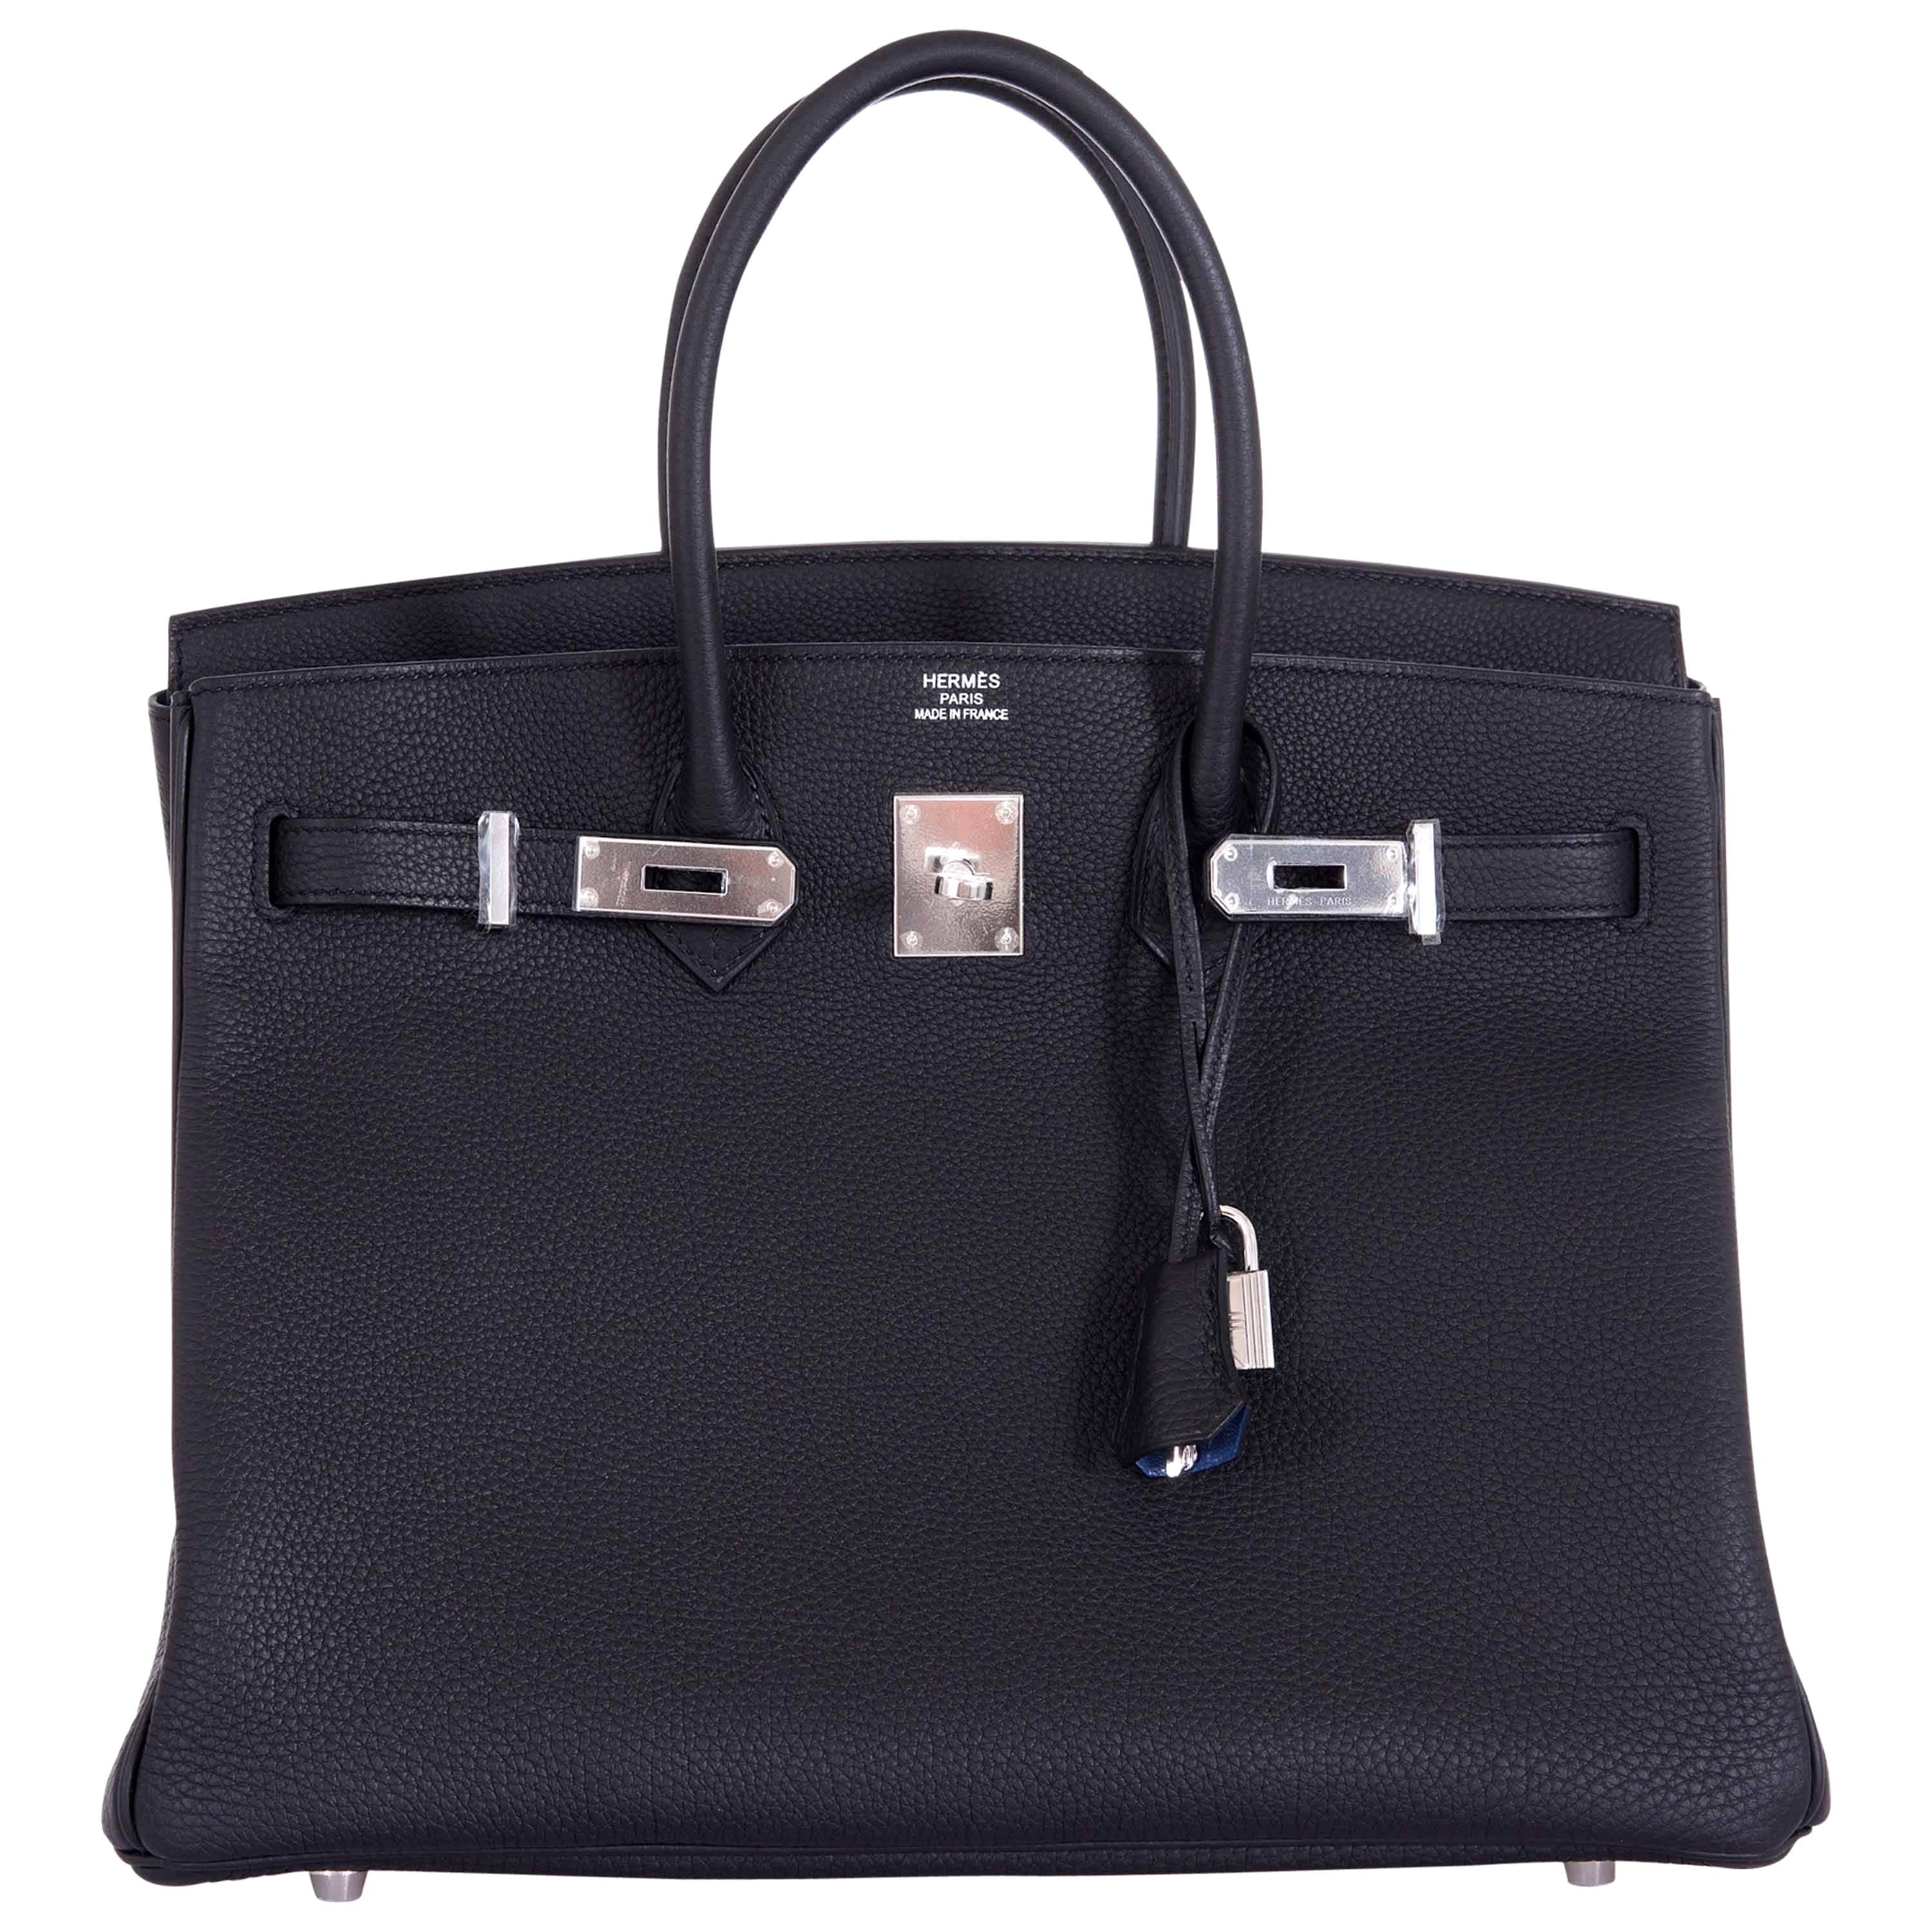 Hermes 35cm Birkin Bag Black Togo * Blue Agate interior LIMITED EDITION For Sale